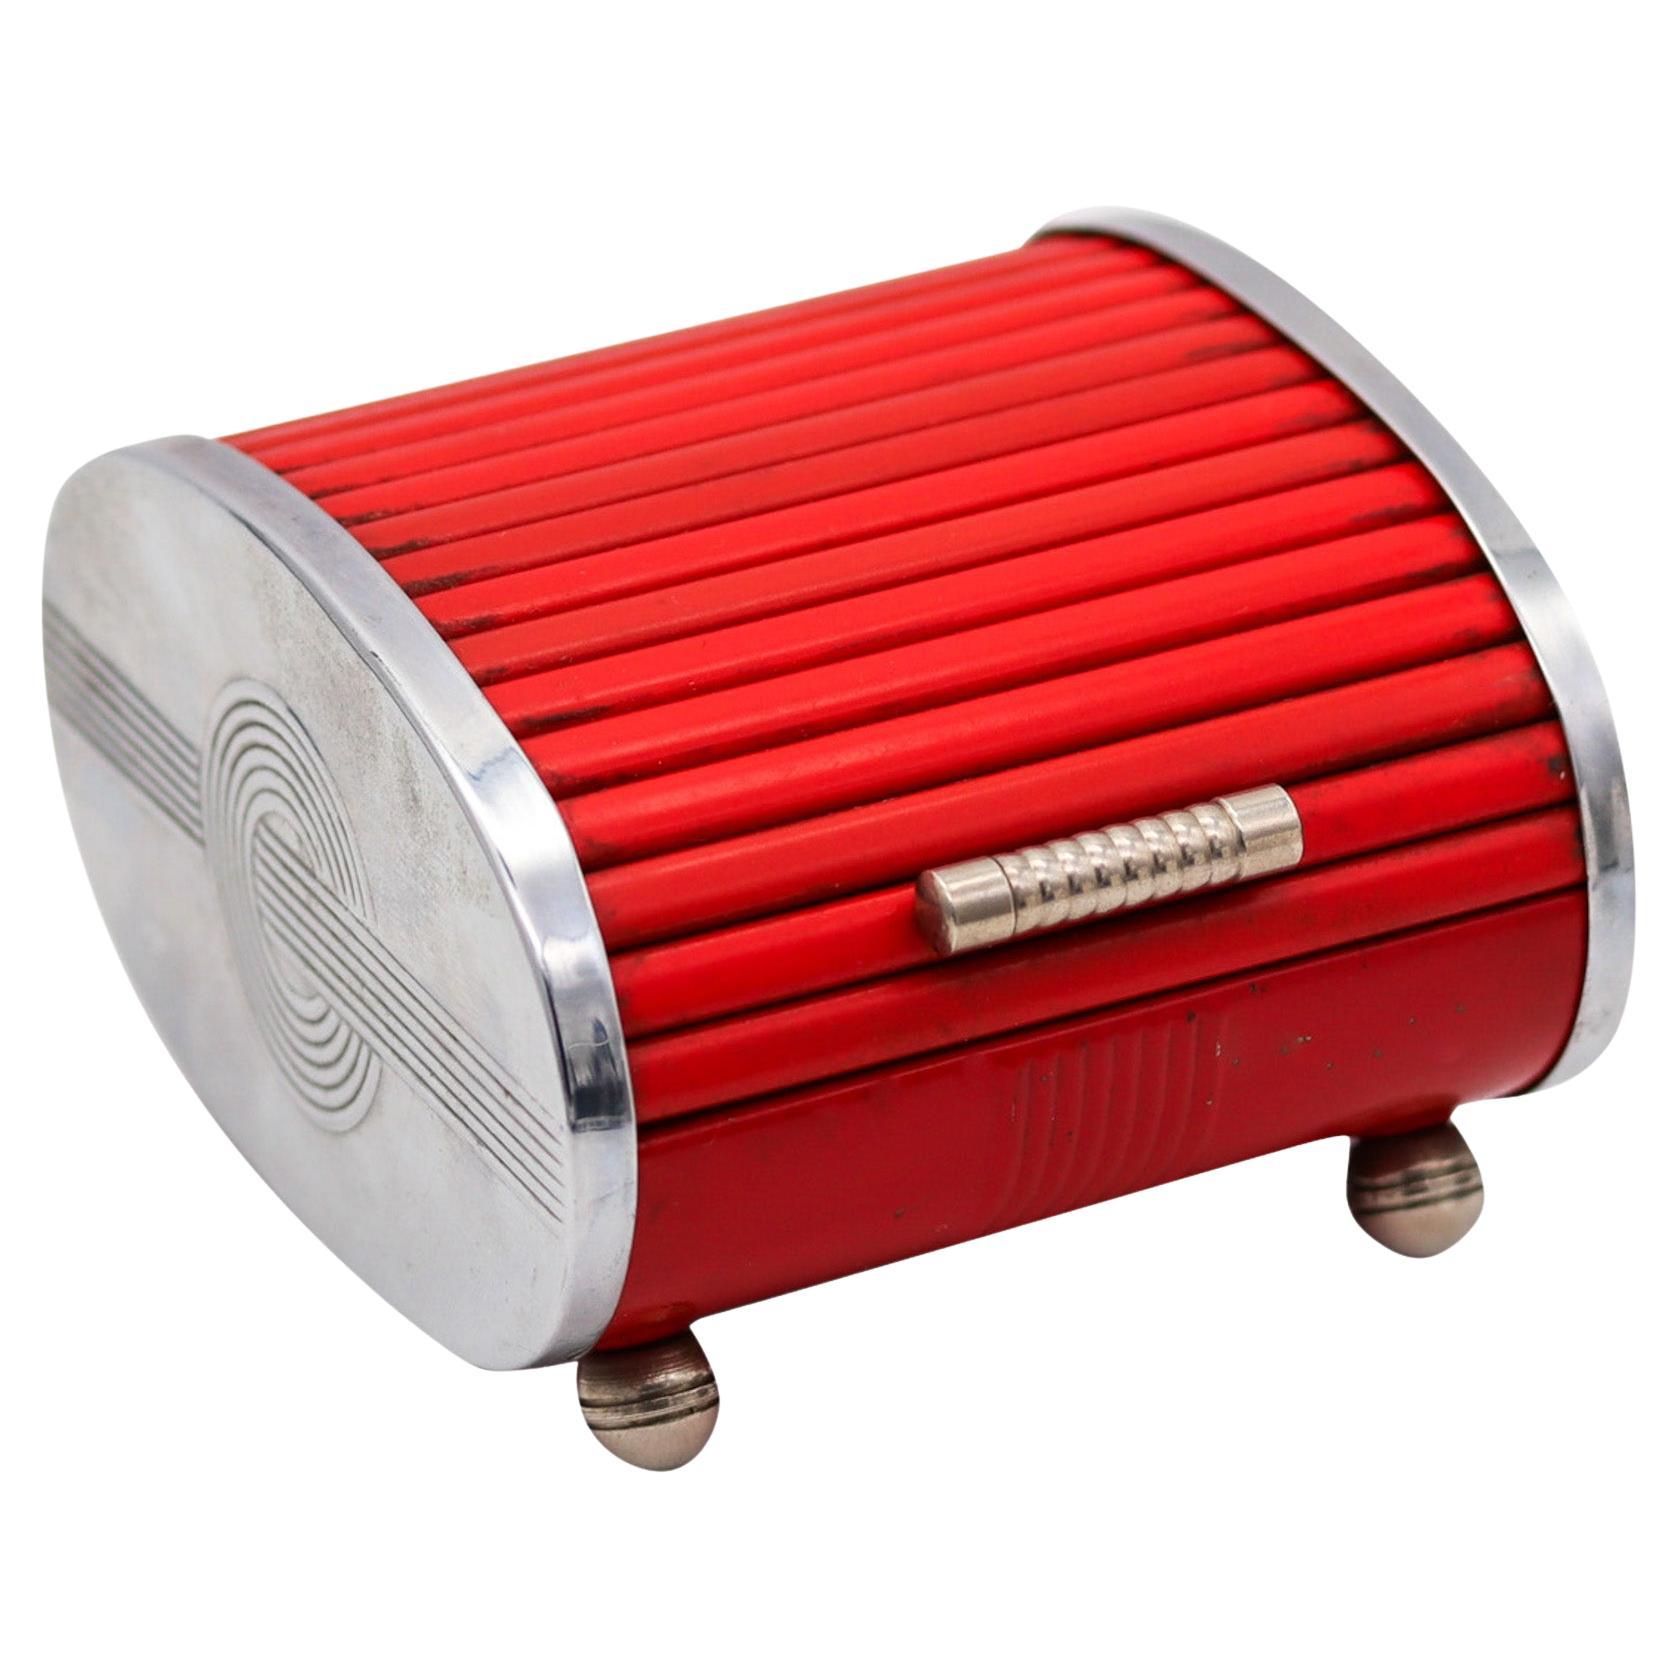 Park Sherman 1930 Art Deco Chromed Steel Roller Lid Box With Red Bakelite For Sale